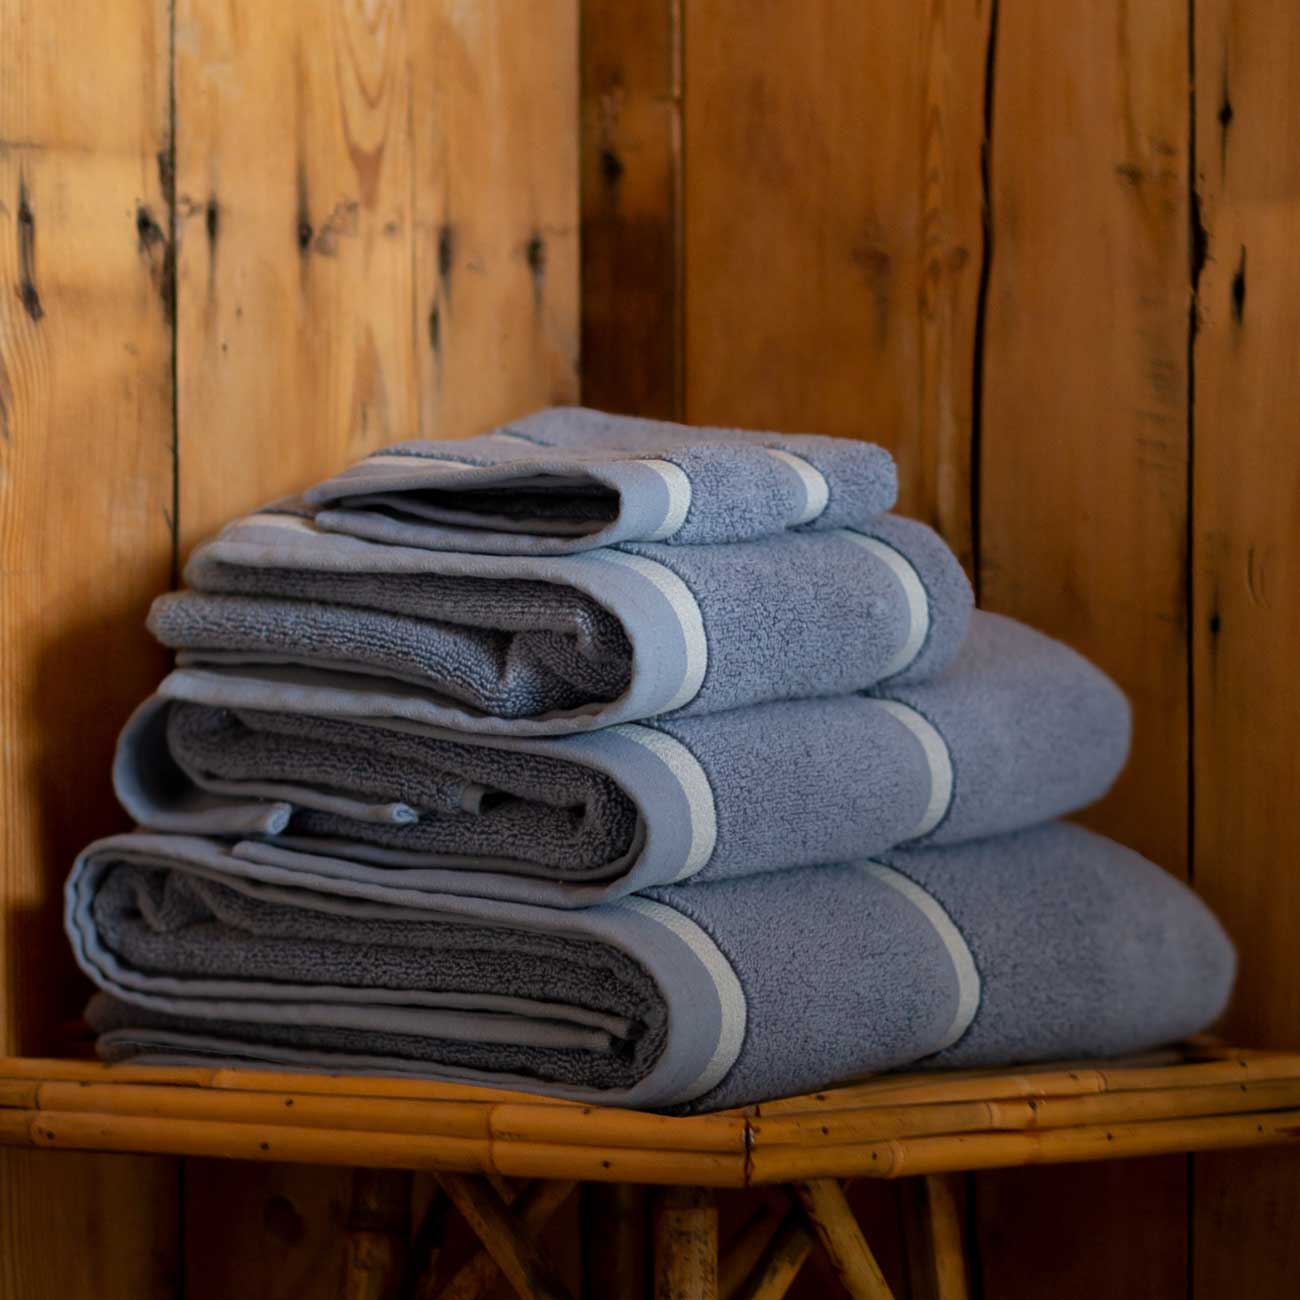 Warm Blue Cotton Towels